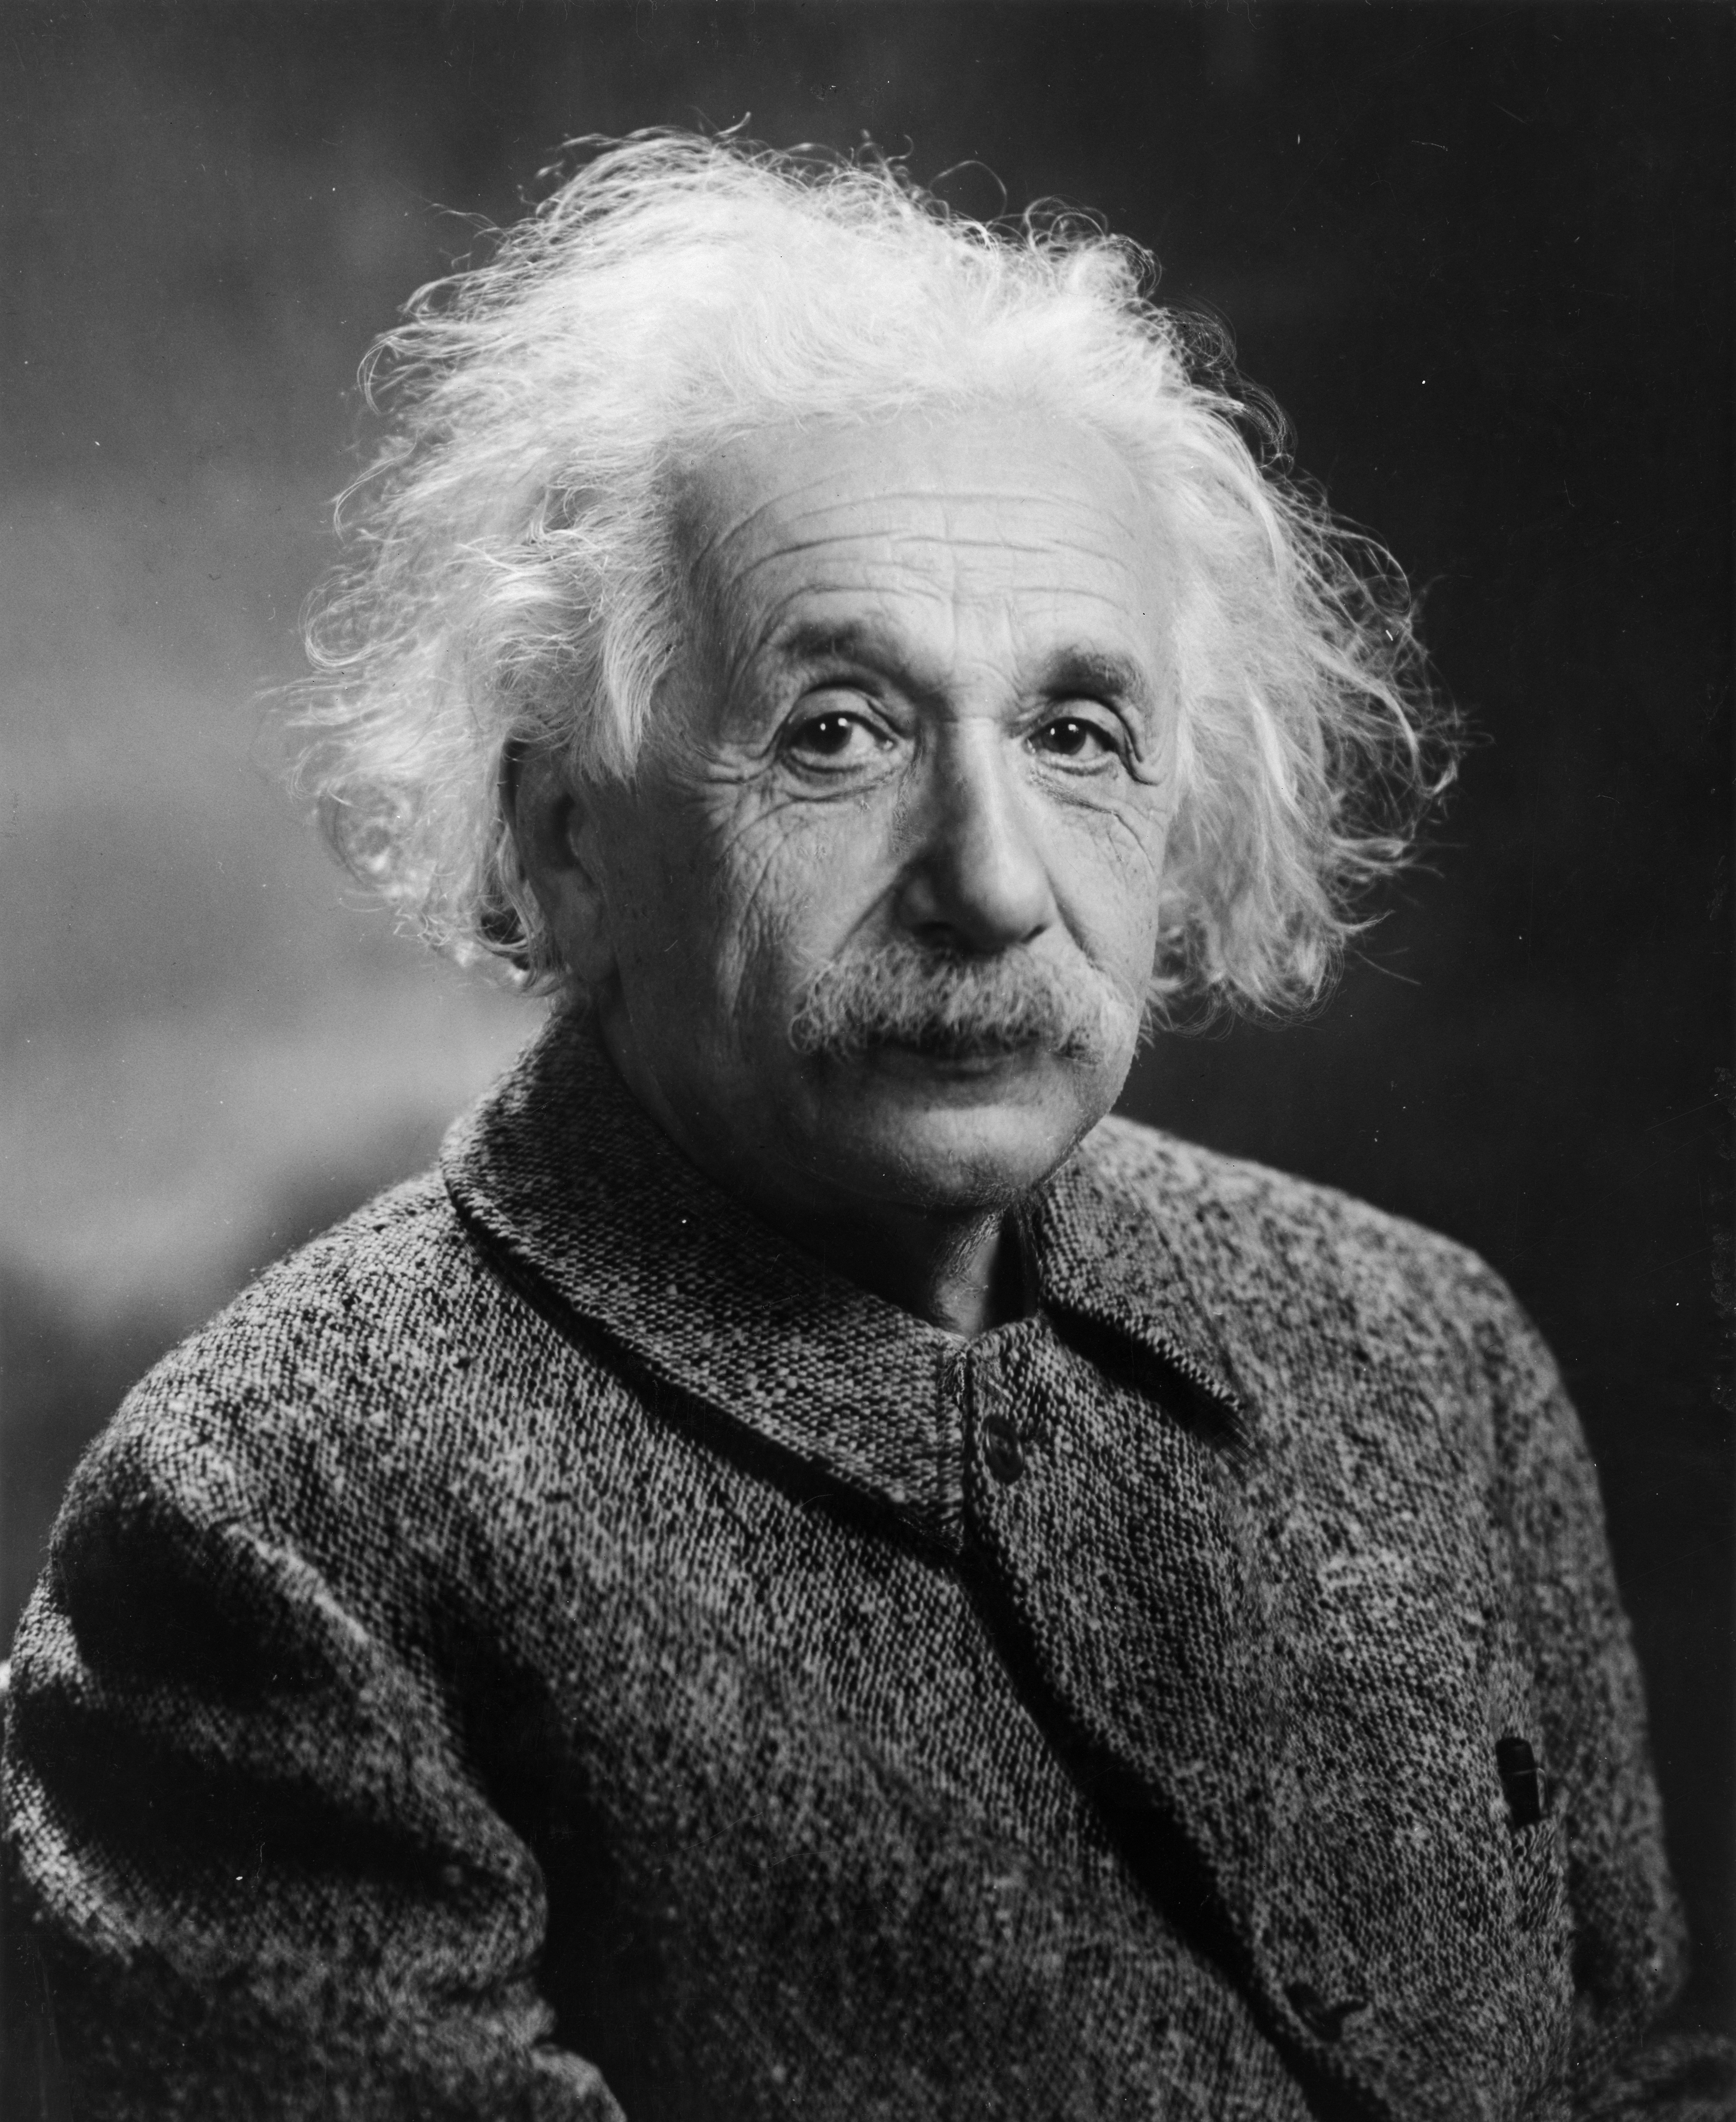 http://upload.wikimedia.org/wikipedia/commons/1/14/Albert_Einstein_1947.jpg